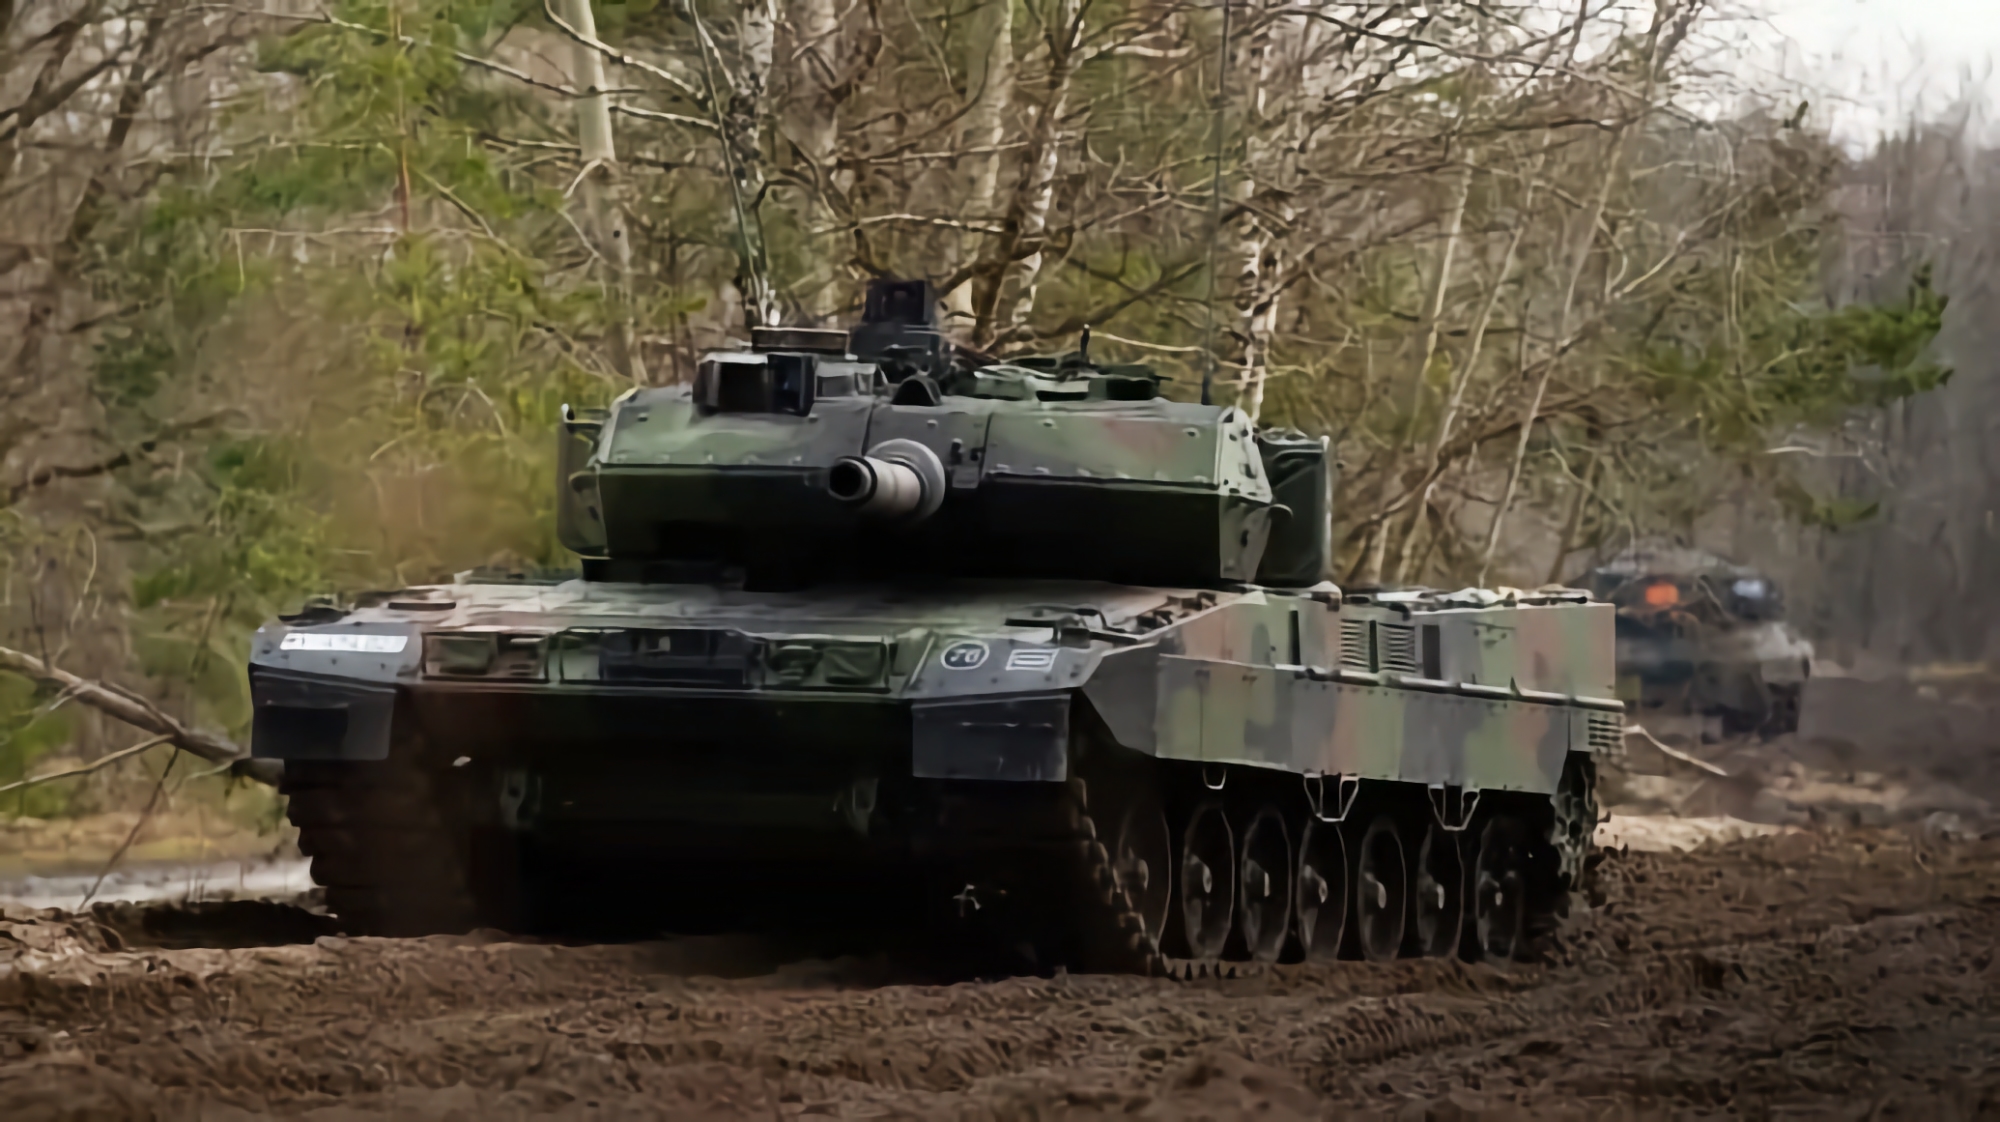 Die AFU zeigte, wie sie mit einem deutschen Leopard 2A6-Panzer auf die Insassen schießt